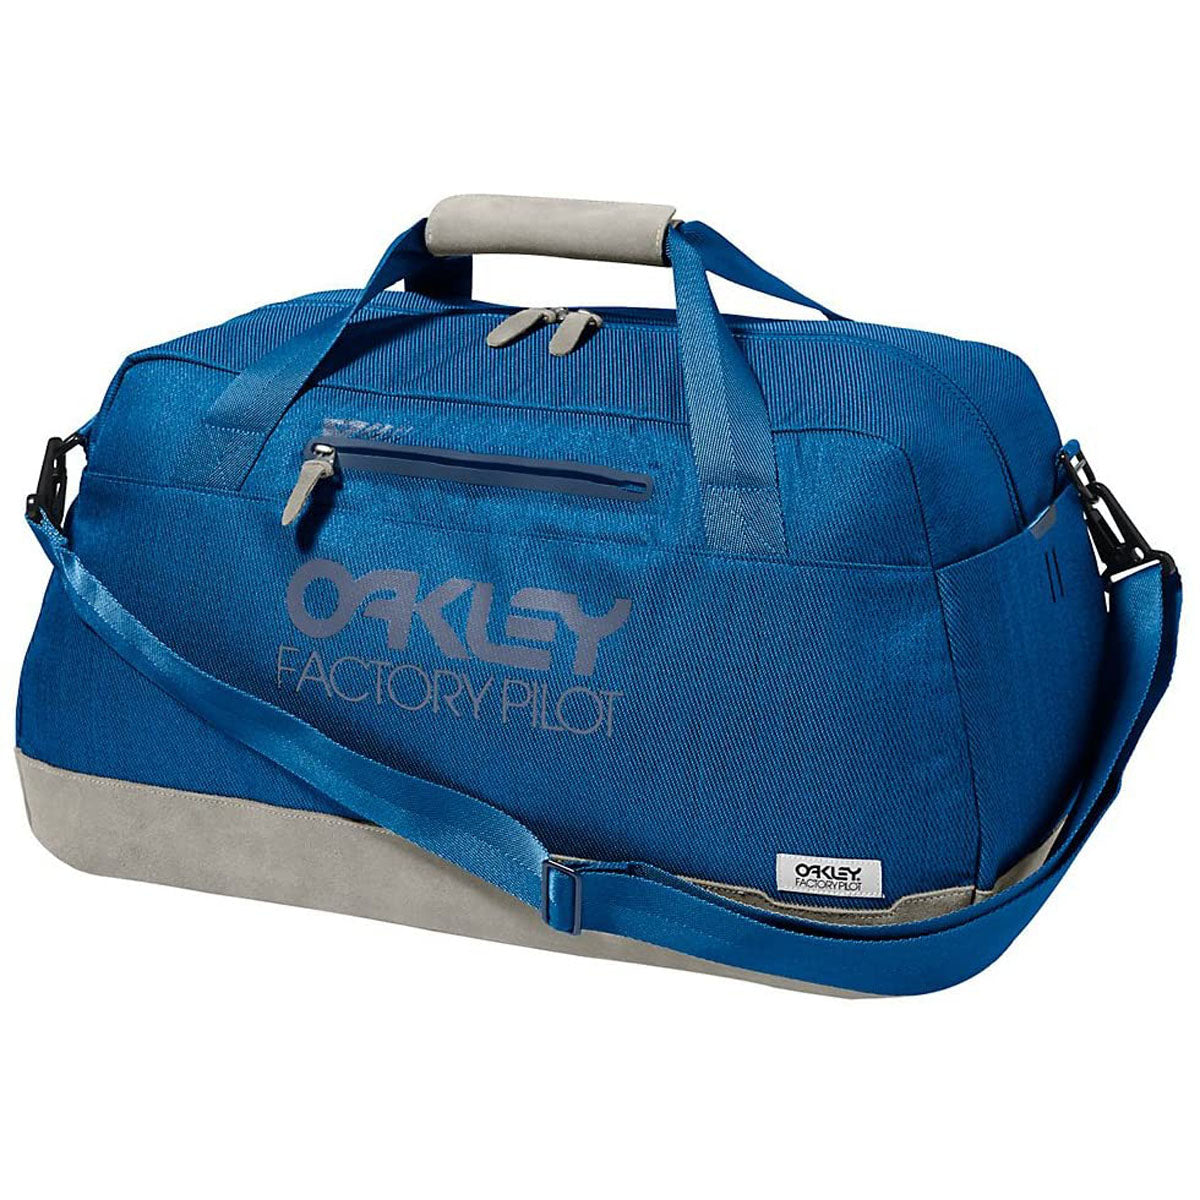 Oakley Factory Pilot Weekender Duffel Bag (CLOSEOUT) - 